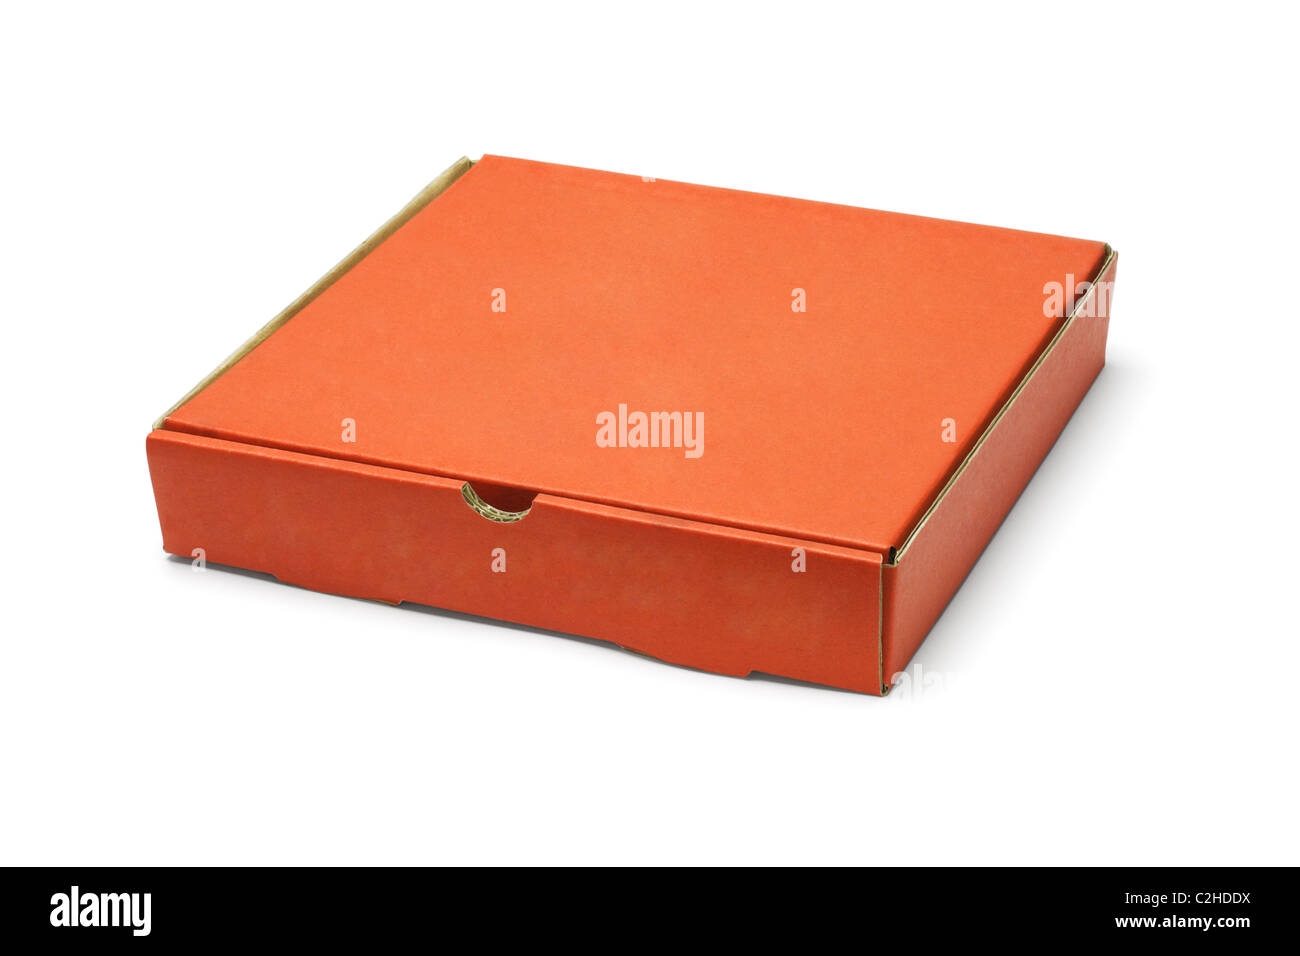 Couleur Orange box à emporter pizza sur fond blanc Banque D'Images